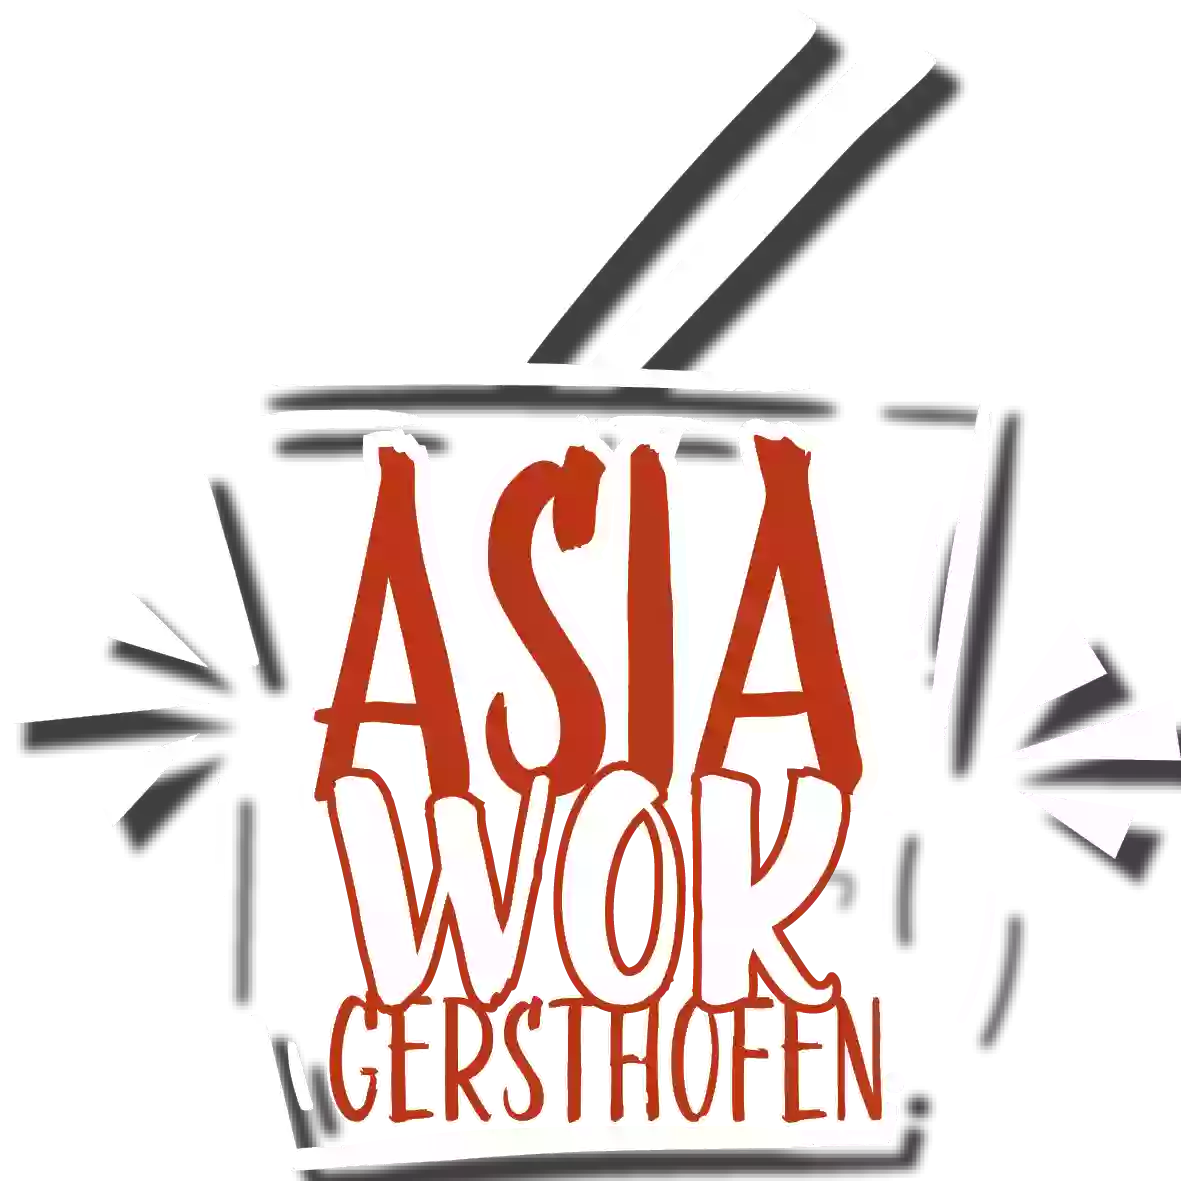 Asia Wok Gersthofen